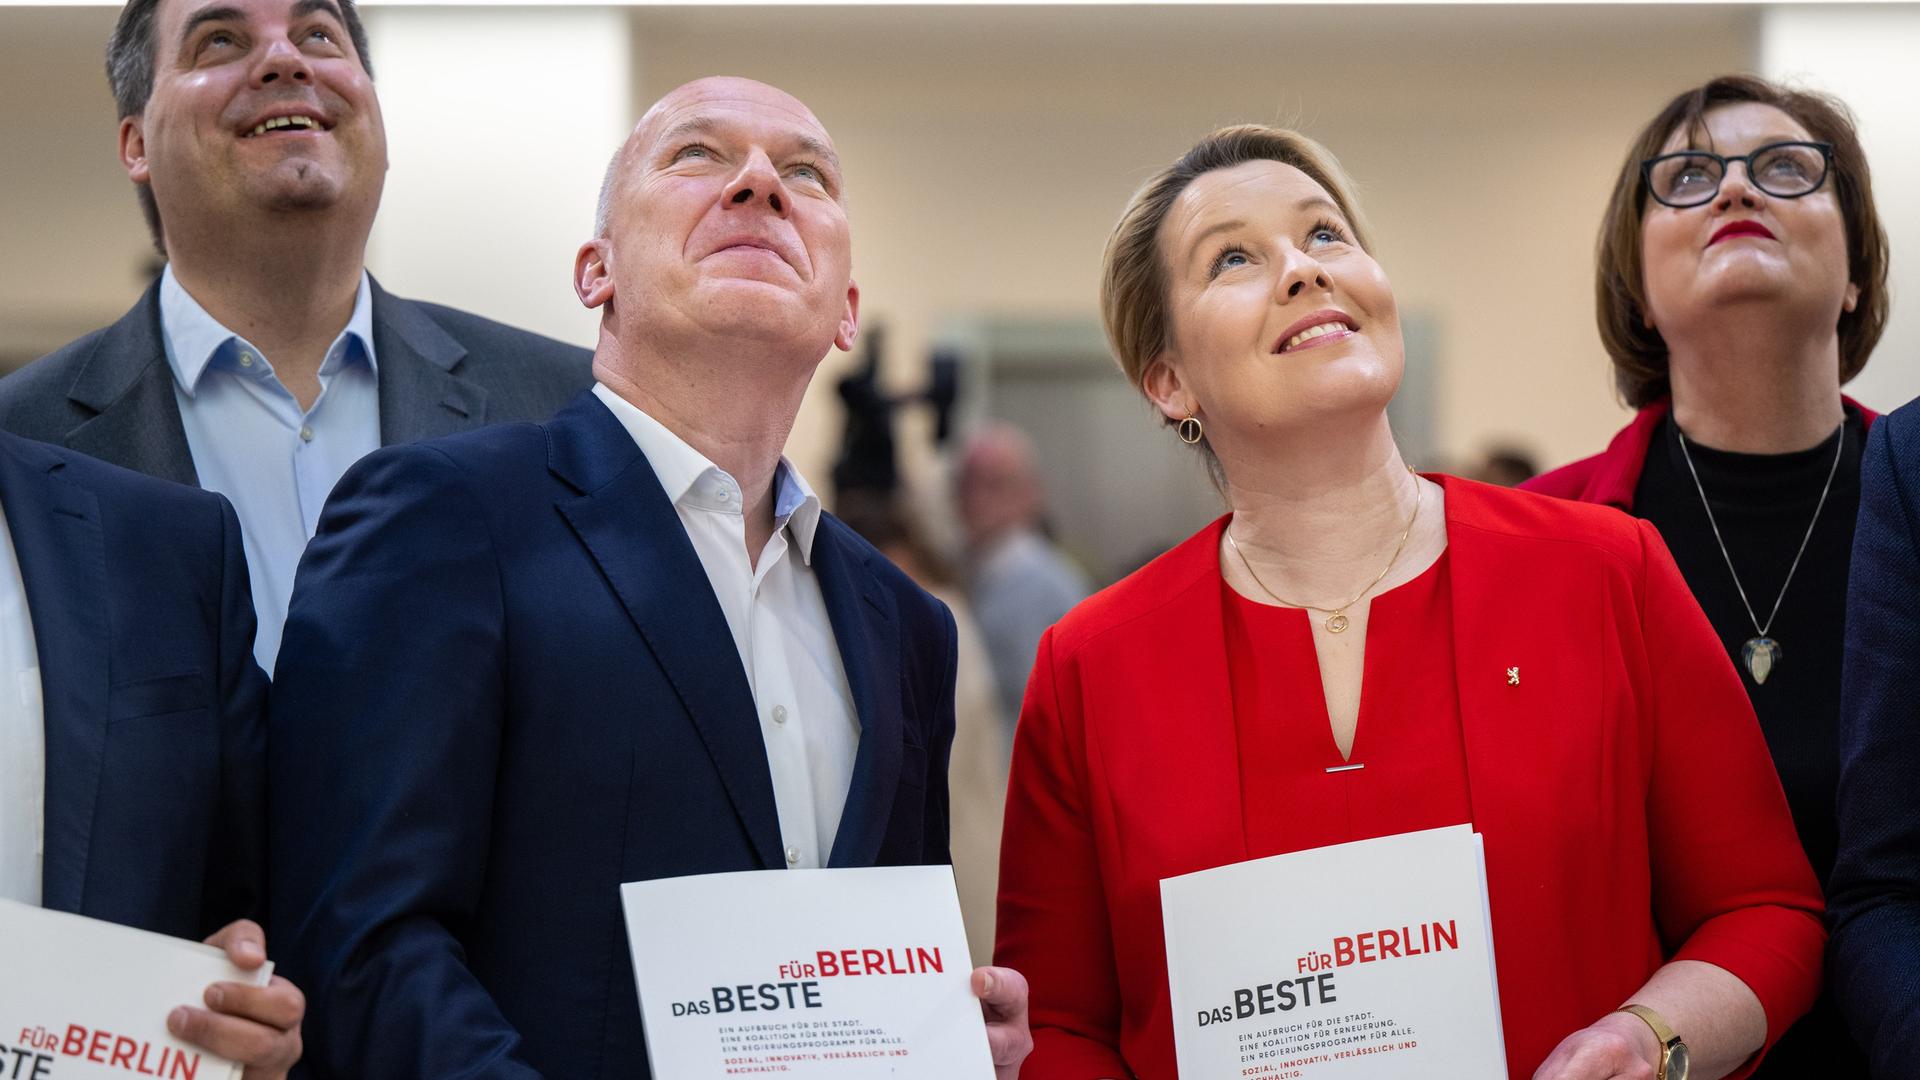 Das Foto zeigt die Berliner Politiker Kai Wegner, Vorsitzender der CDU in Berlin, und Franziska Giffey, SPD und derzeit noch Regierende Bürgermeisterin von Berlin. Sie lächeln und blicken nach oben.